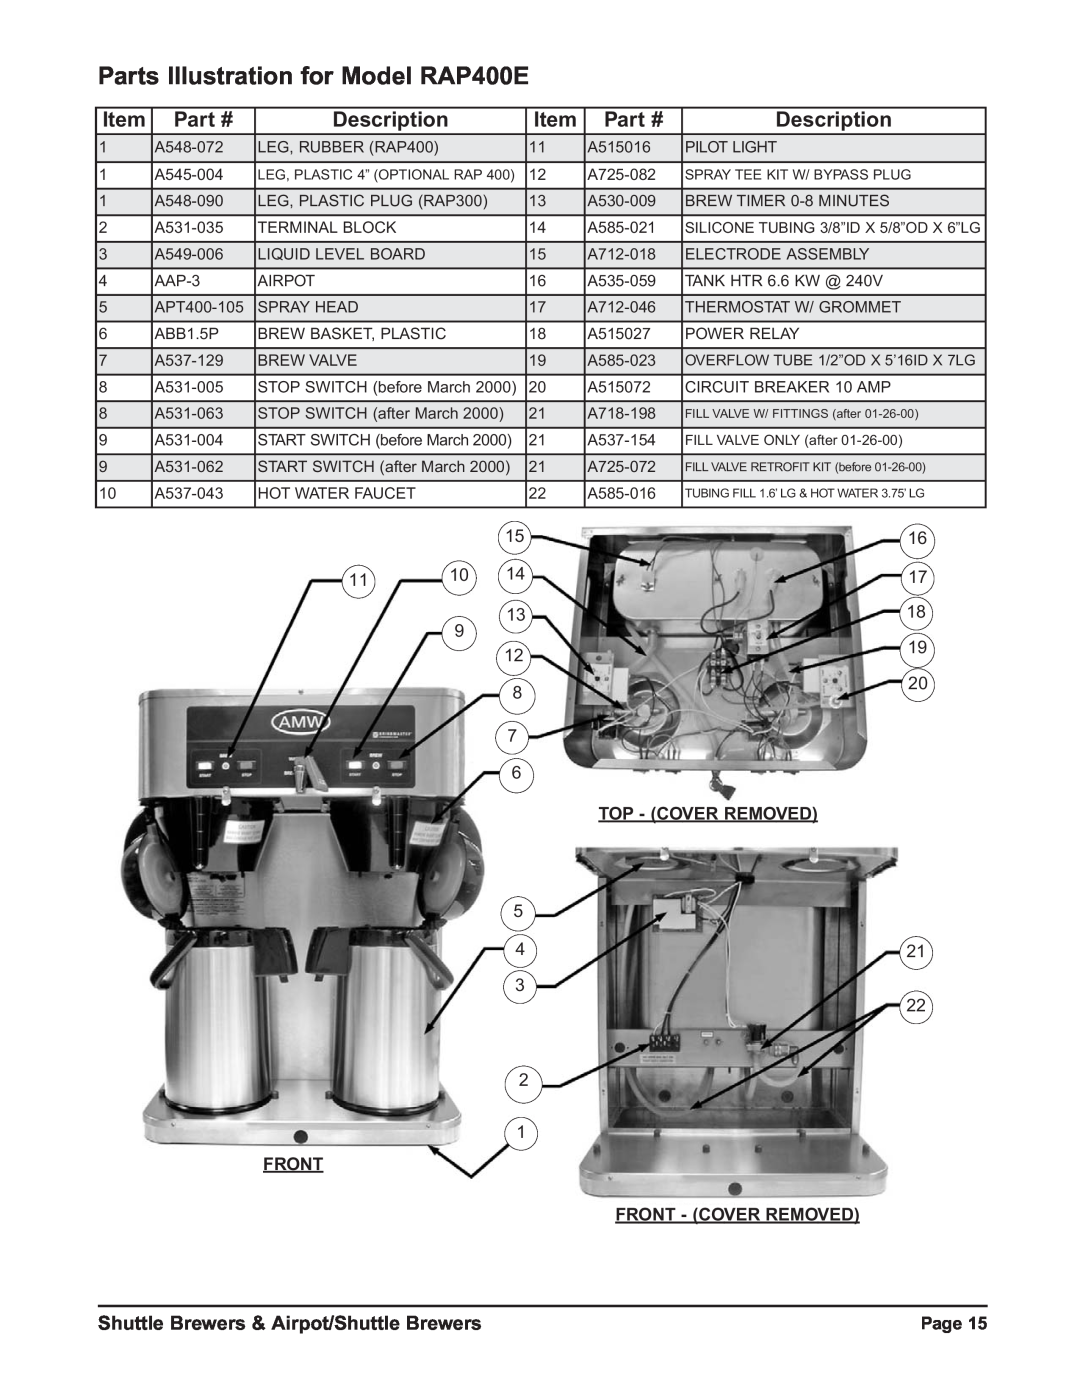 Grindmaster RAPS300E Parts Illustration for Model RAP400E, Description, Shuttle Brewers & Airpot/Shuttle Brewers, Page 